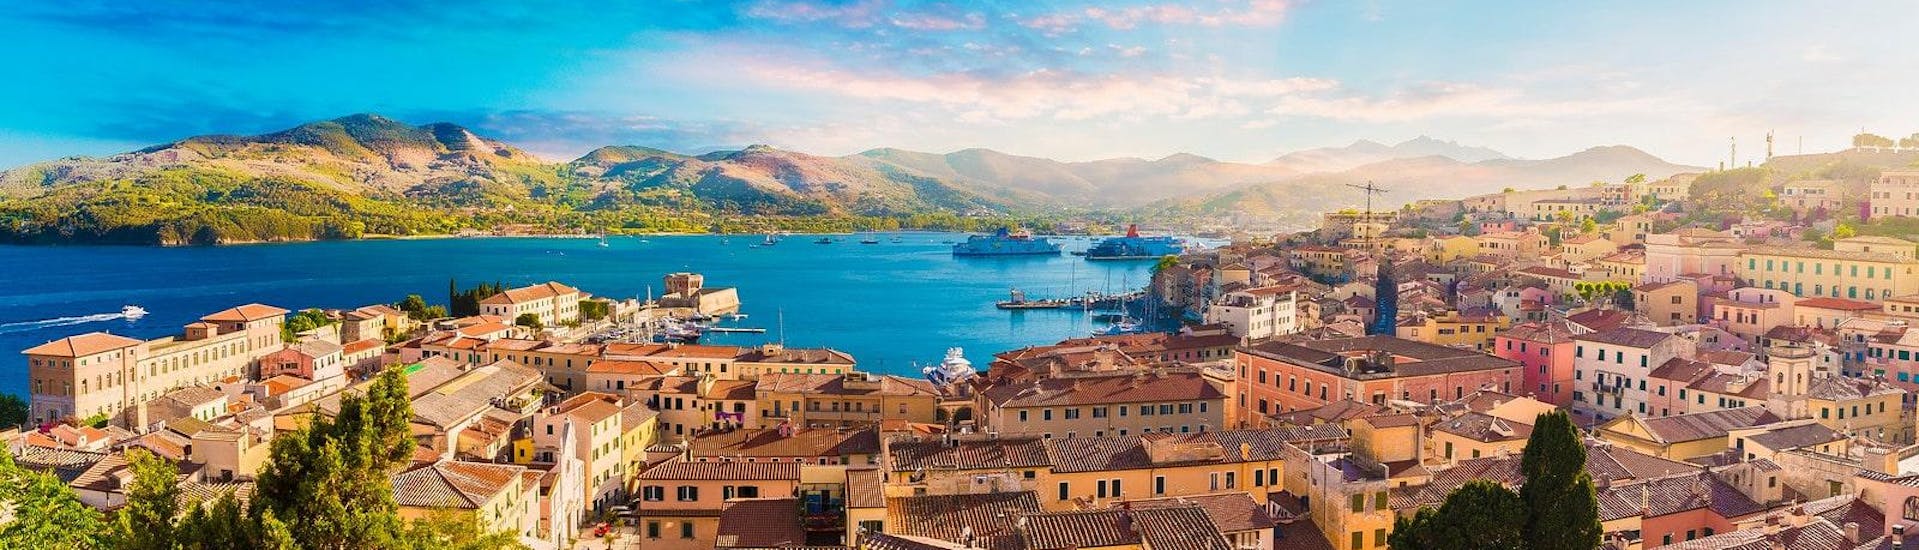 Vista maravillosa del casco antiguo y del puerto de Portoferraio, Isla de Elba, Italia.